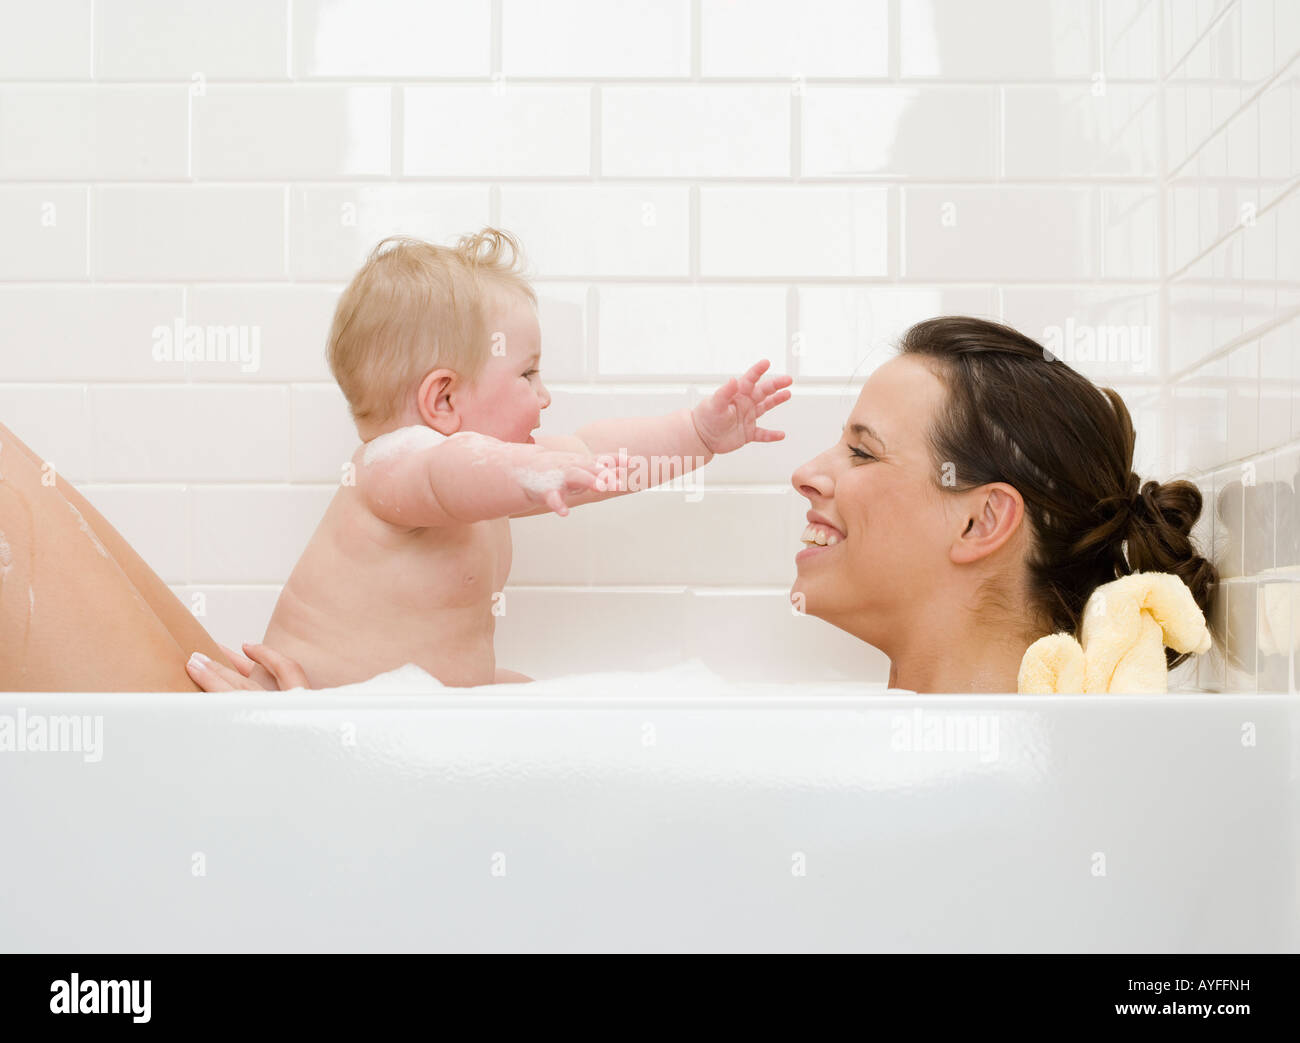 Мама можно ванну. Мама купает ребенка. Совместное купание с малышом. Совместное купание с грудничком. Совместное купание с грудничком в ванной.